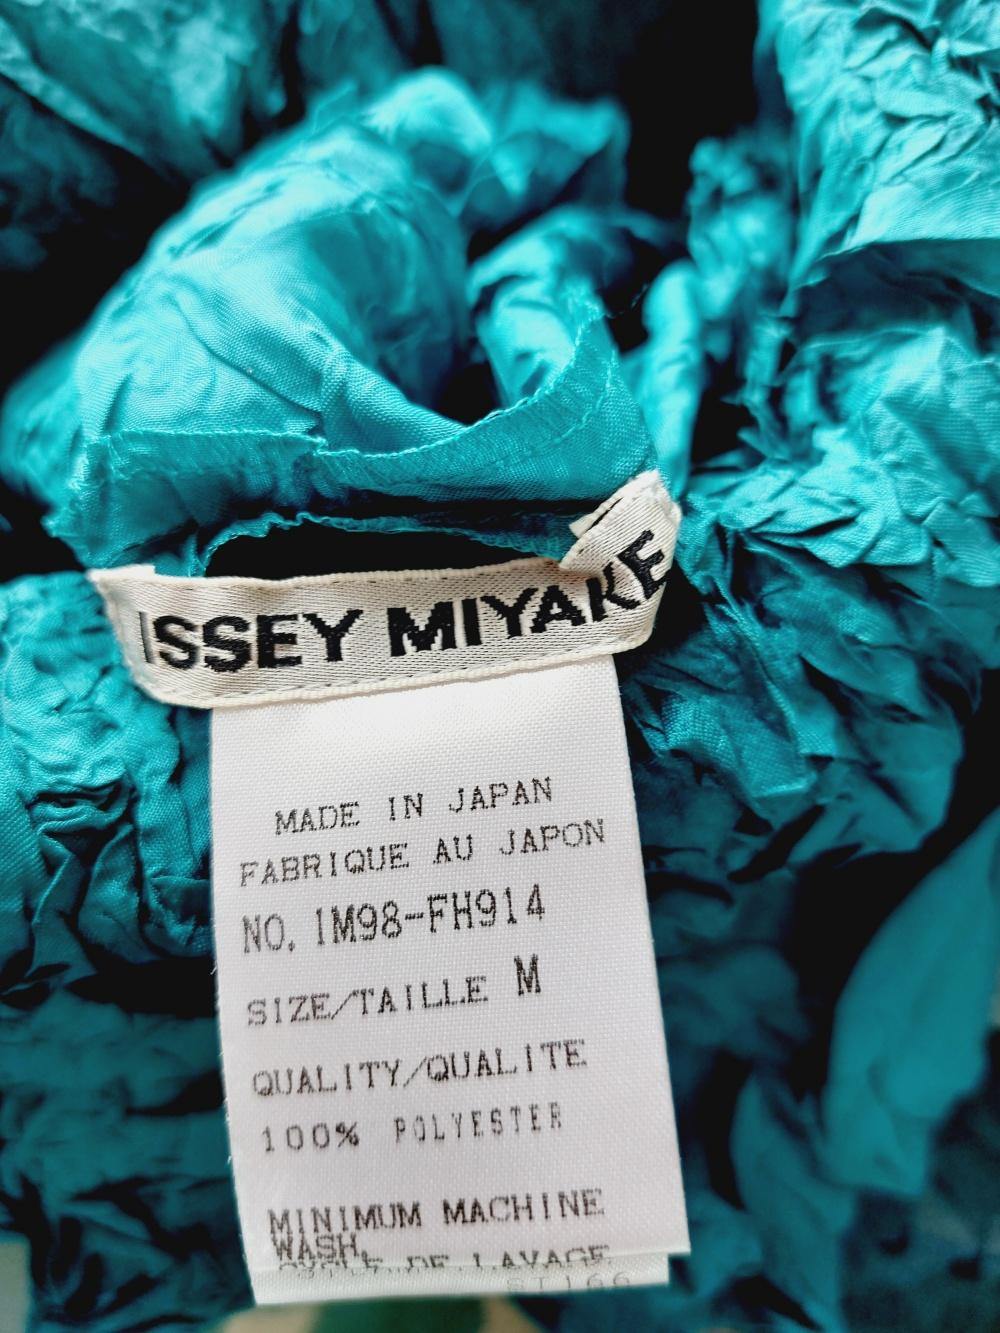 Issey Miyake Metallic Blue Wrinkled Runway Japanese Pleats Please Dress Gown 12